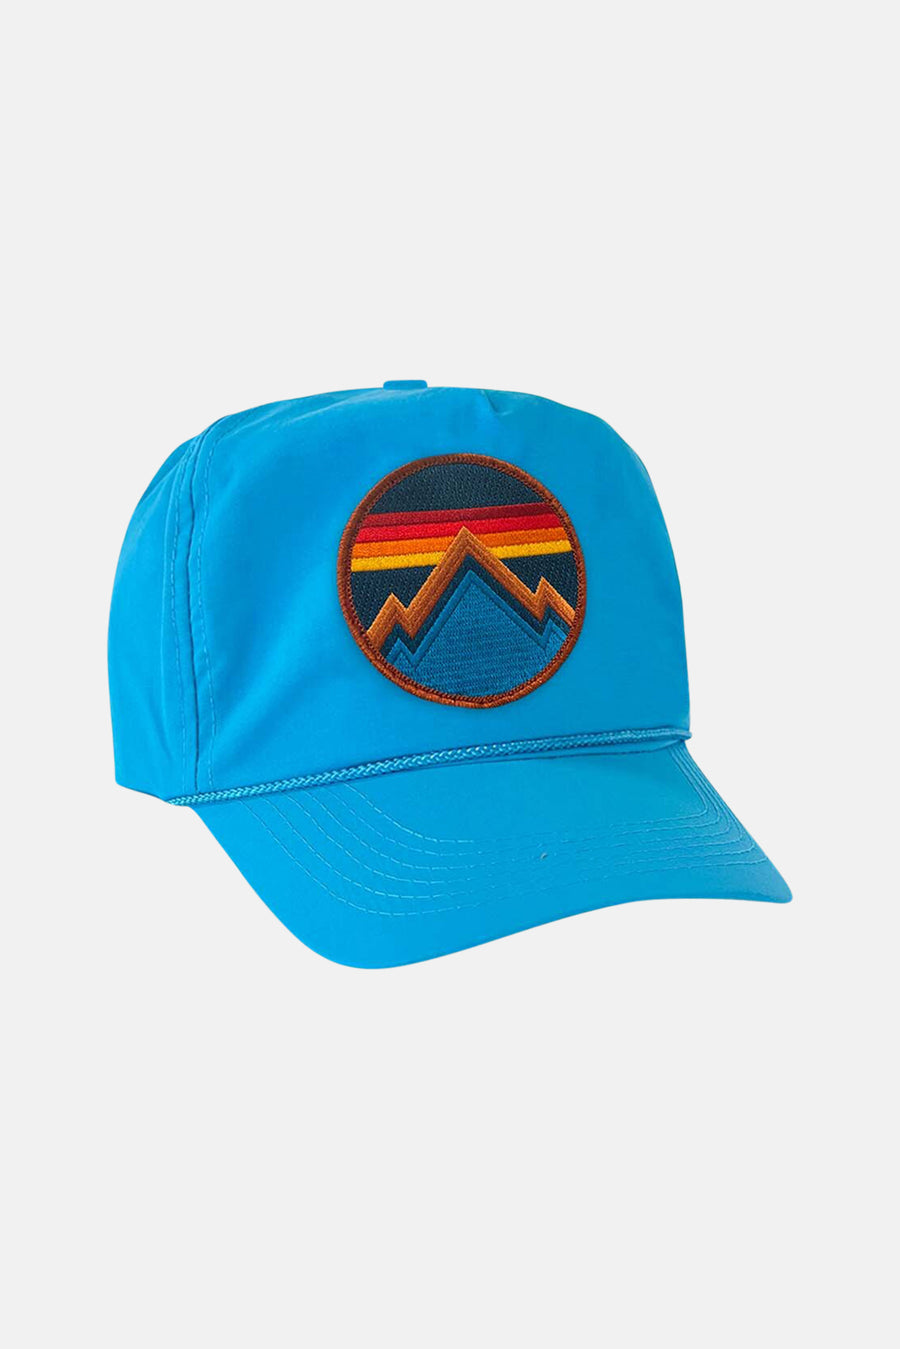 All Seasons Vintage Nylon Trucker Hat Light Blue - blueandcream